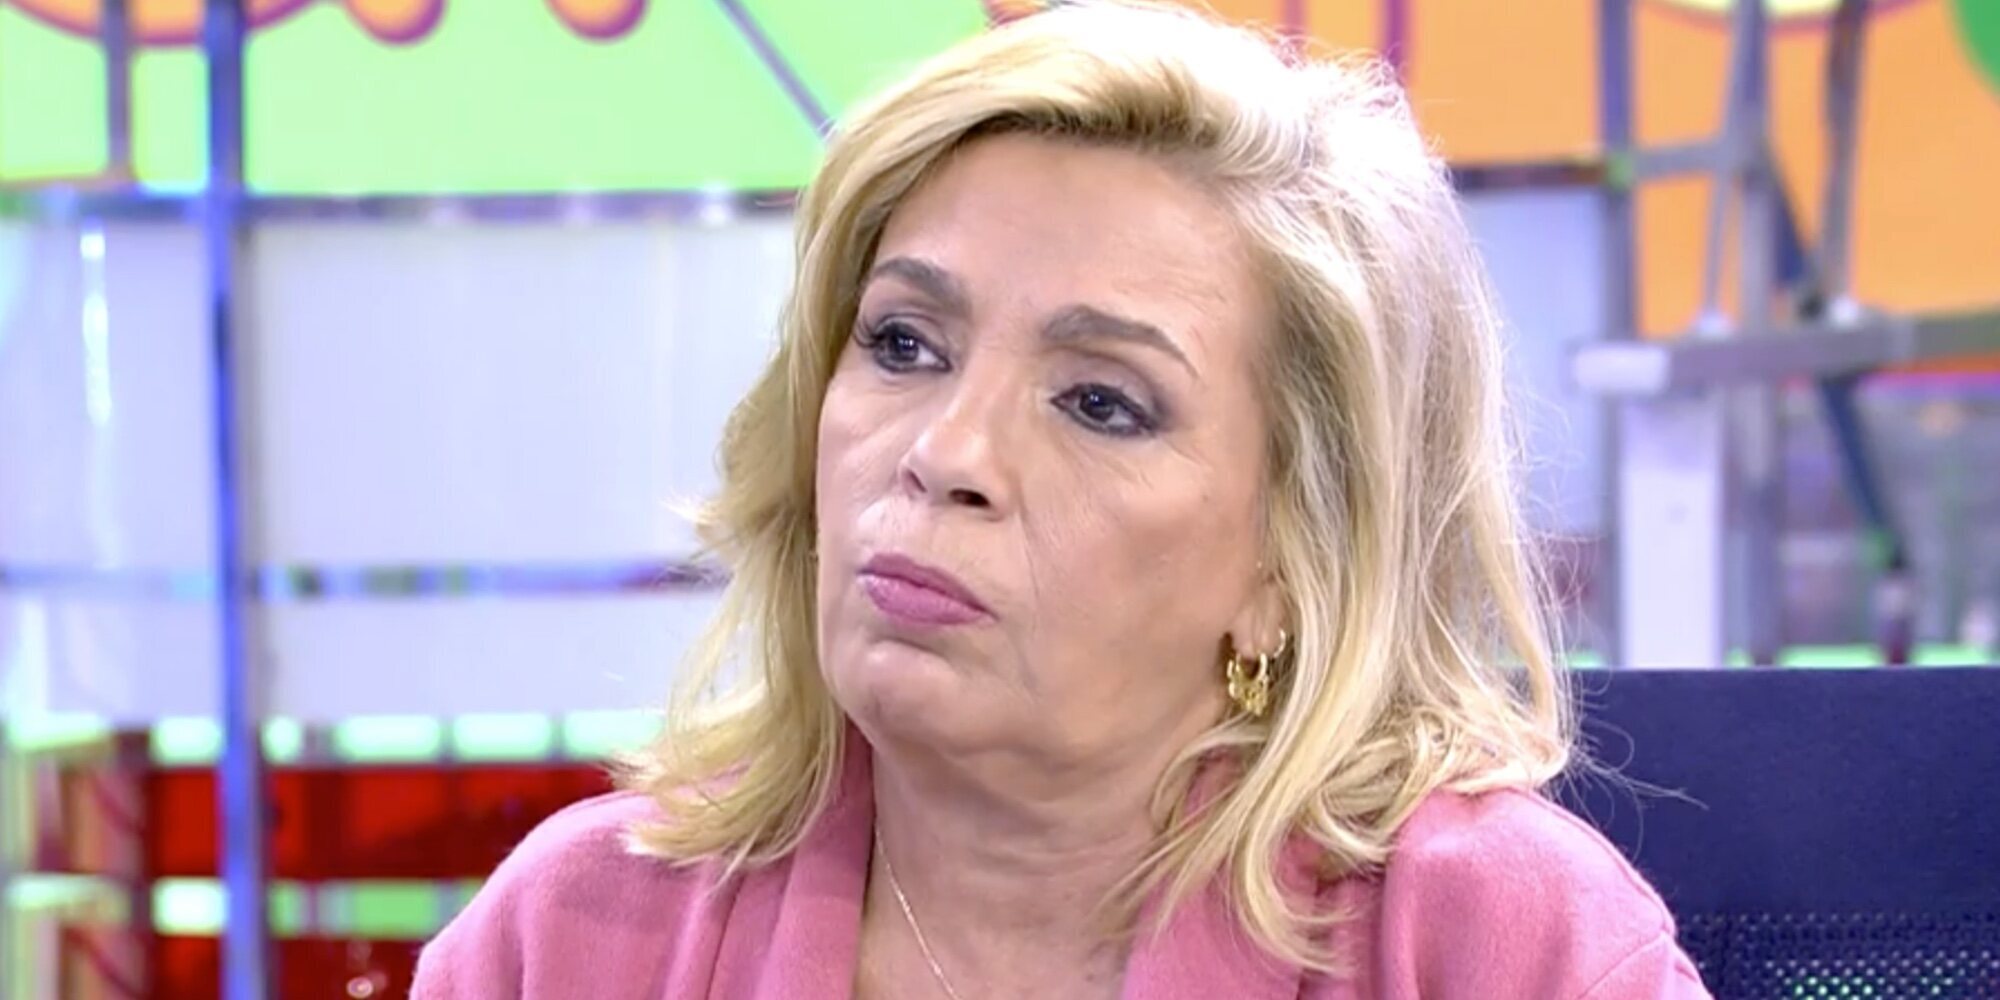 Estalla la tensión entre Carmen Borrego y Pipi Estrada en 'Sálvame': "¡Tú no tienes categoría!"